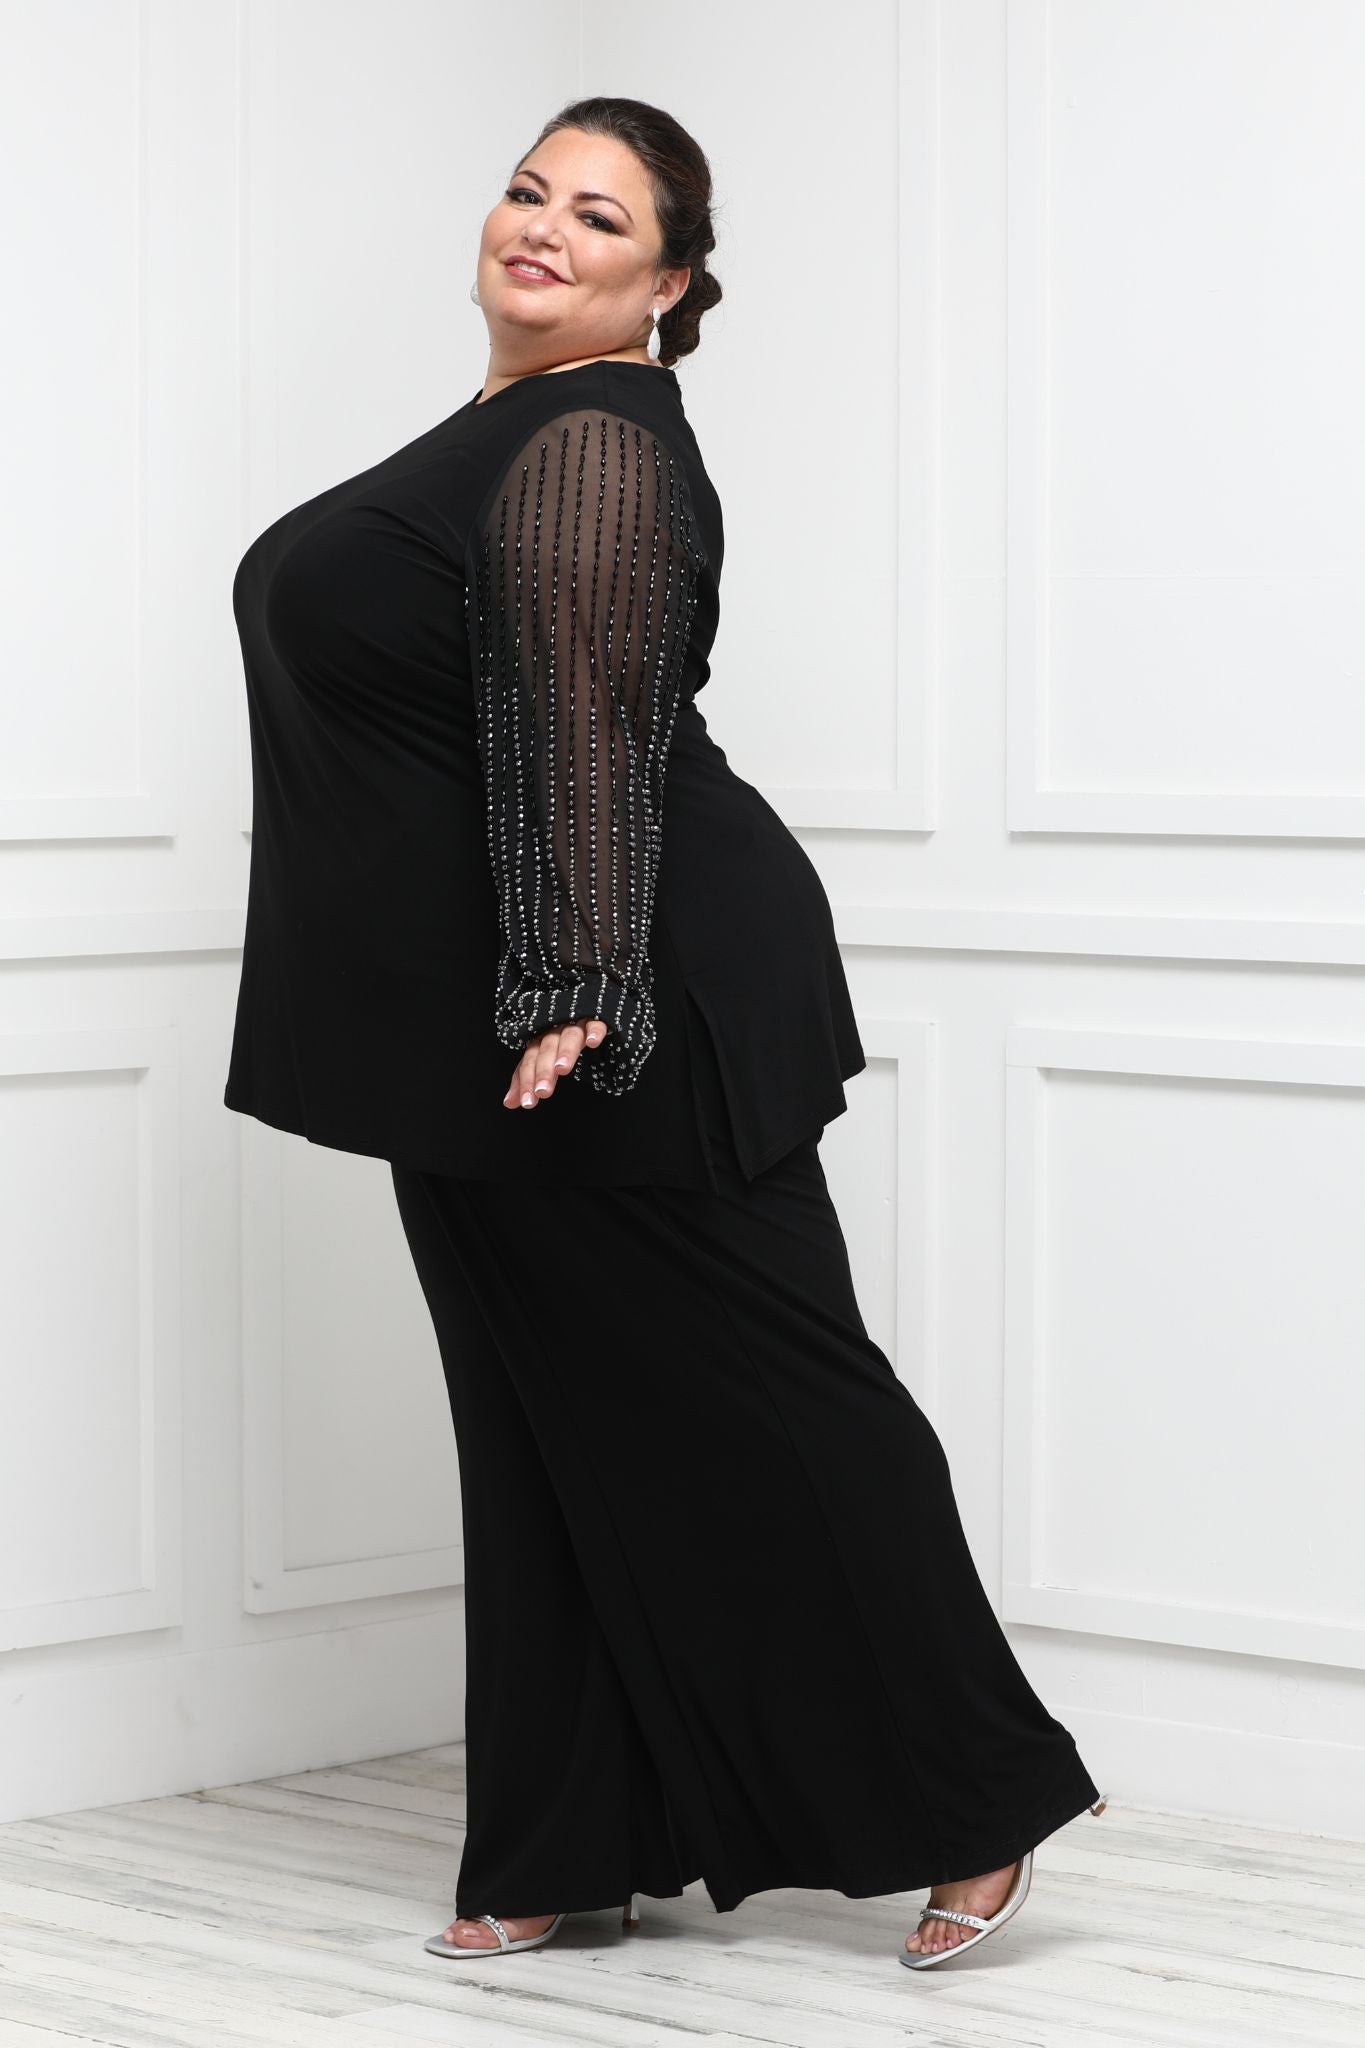 Black Pantsuit for Women, Black Formal Pants Suit for Women